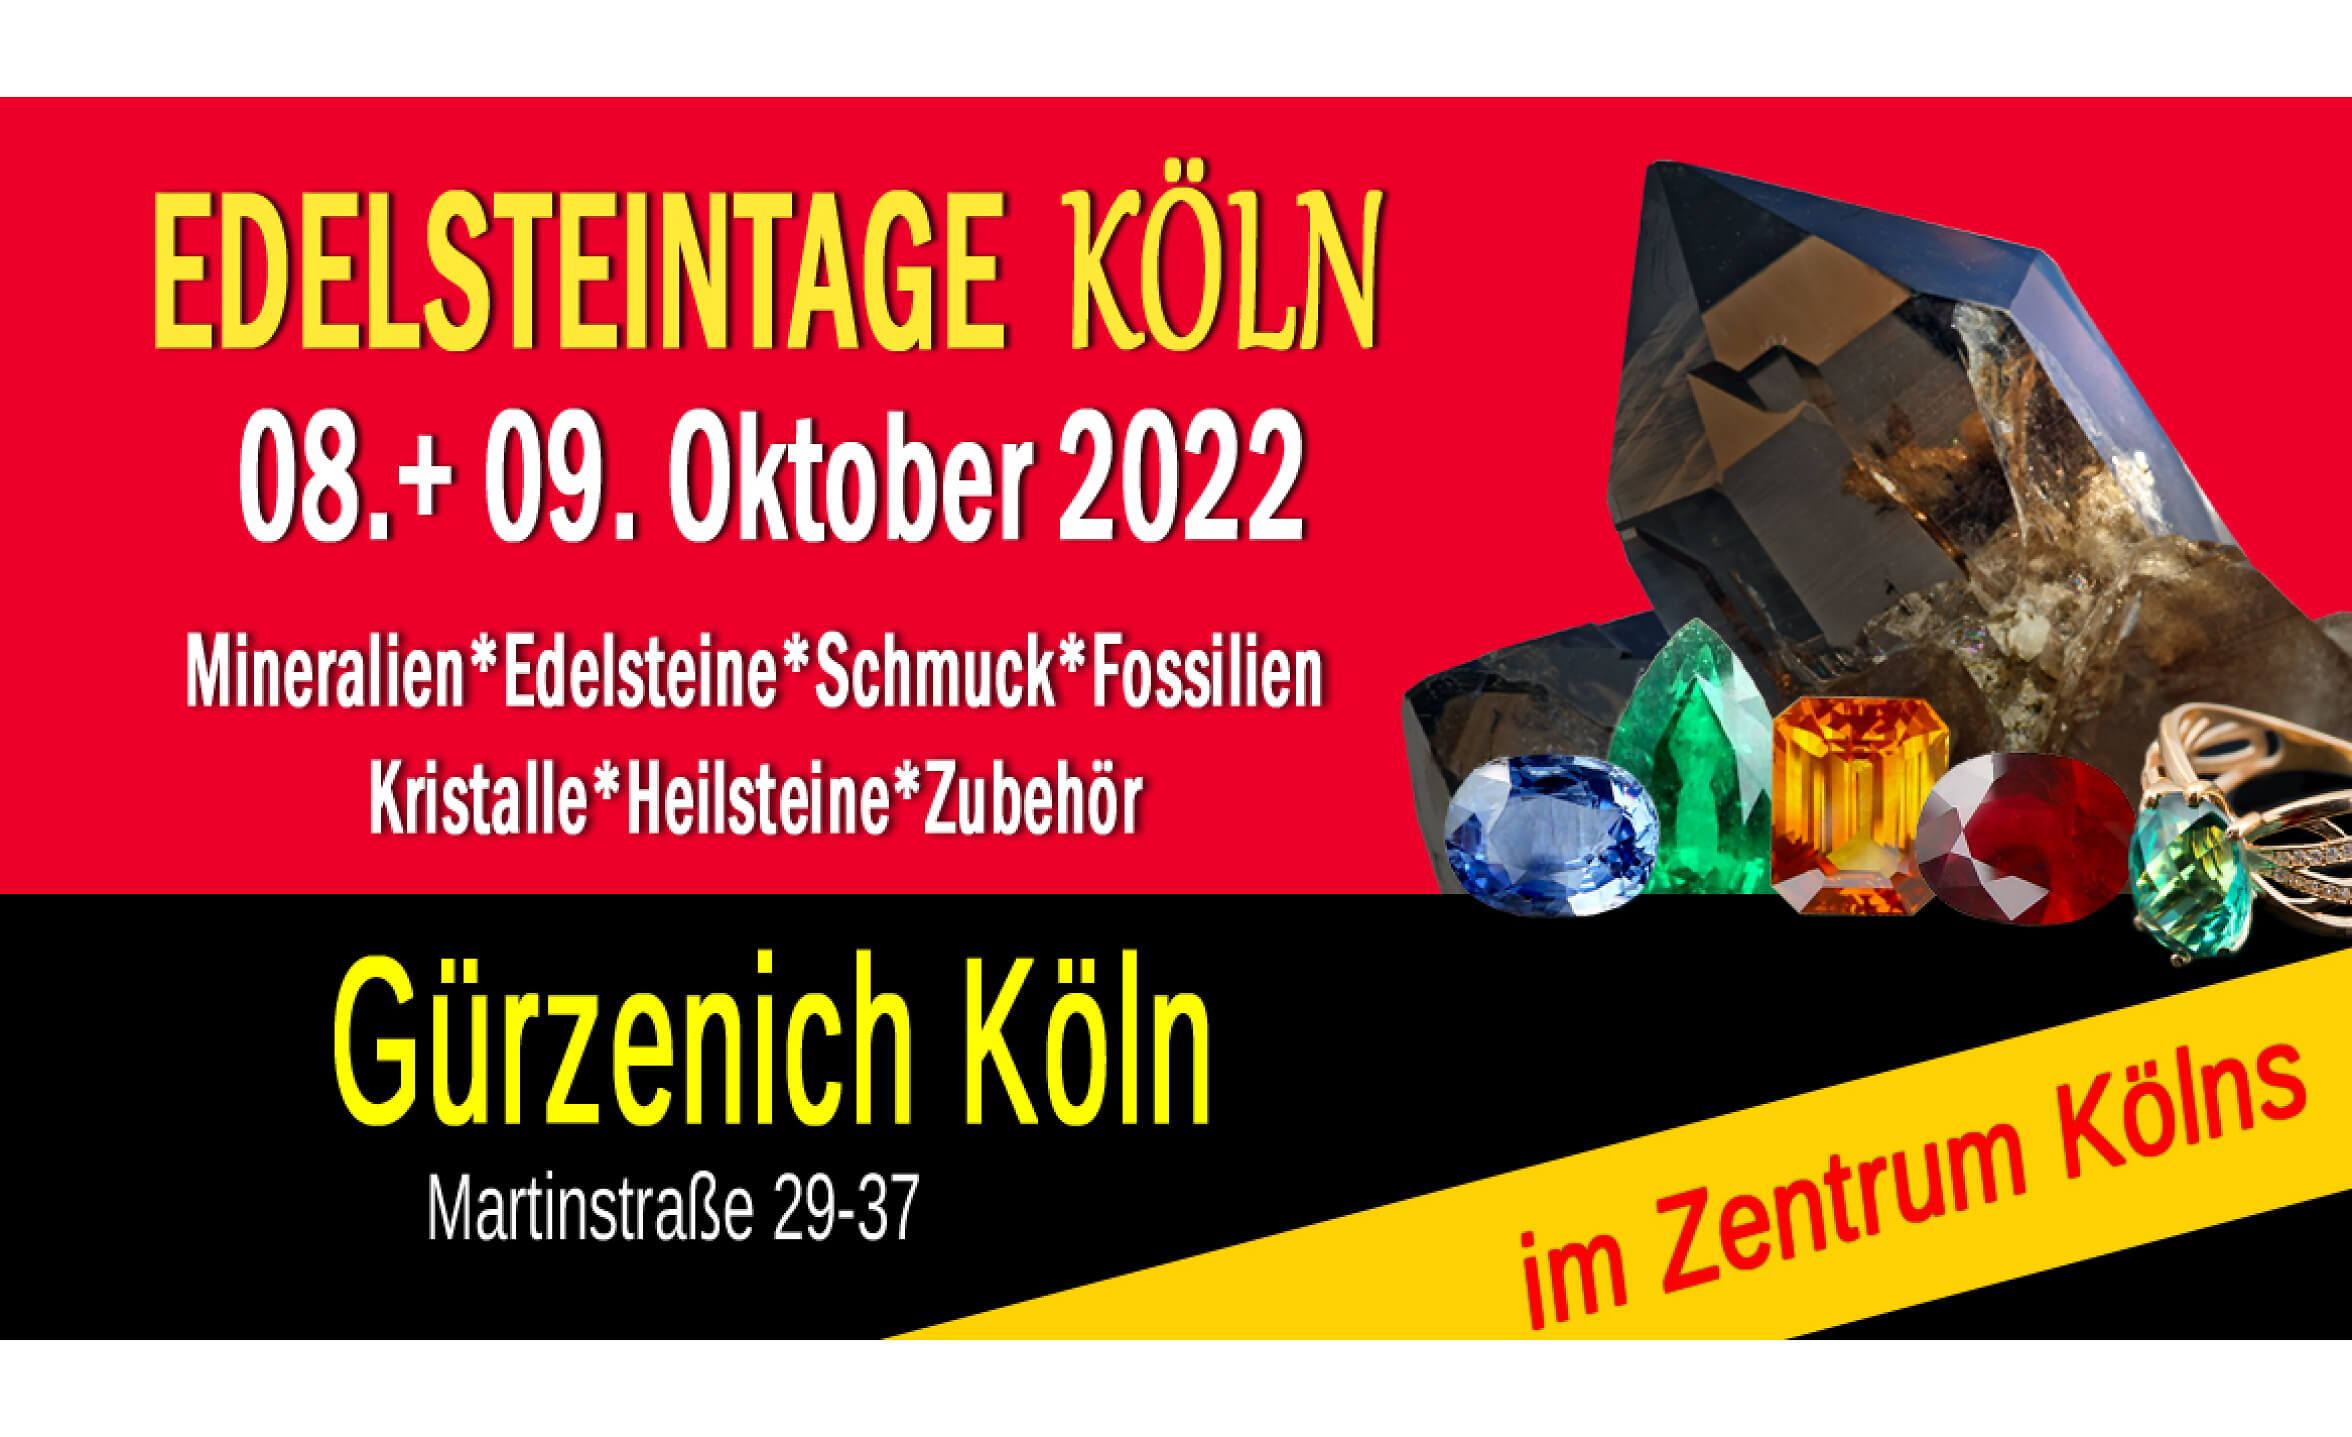 Event-Image for 'Edelsteintage Köln'